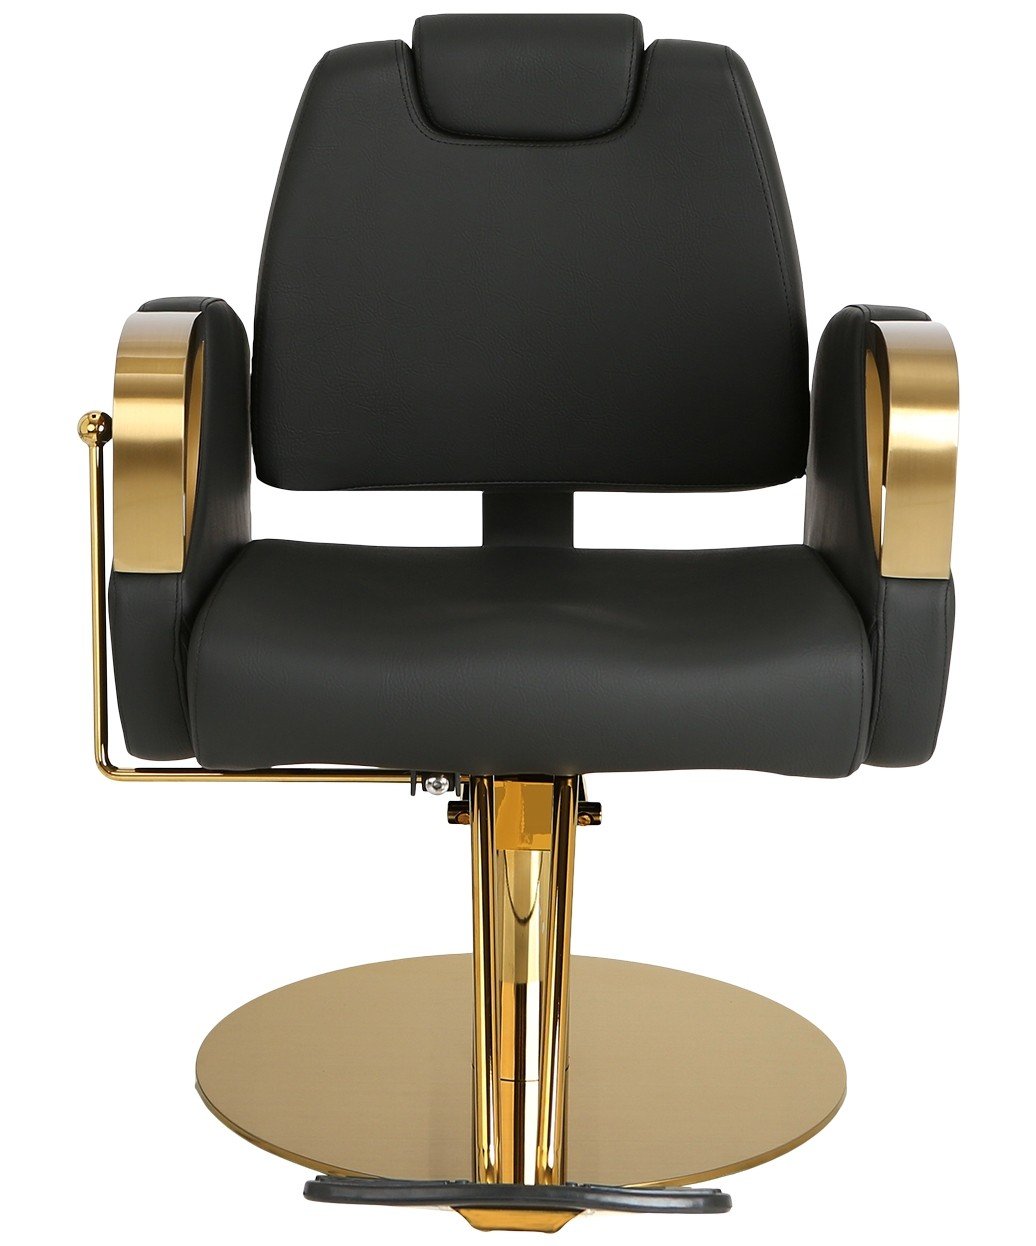 Venus Gold All Chair Purpose